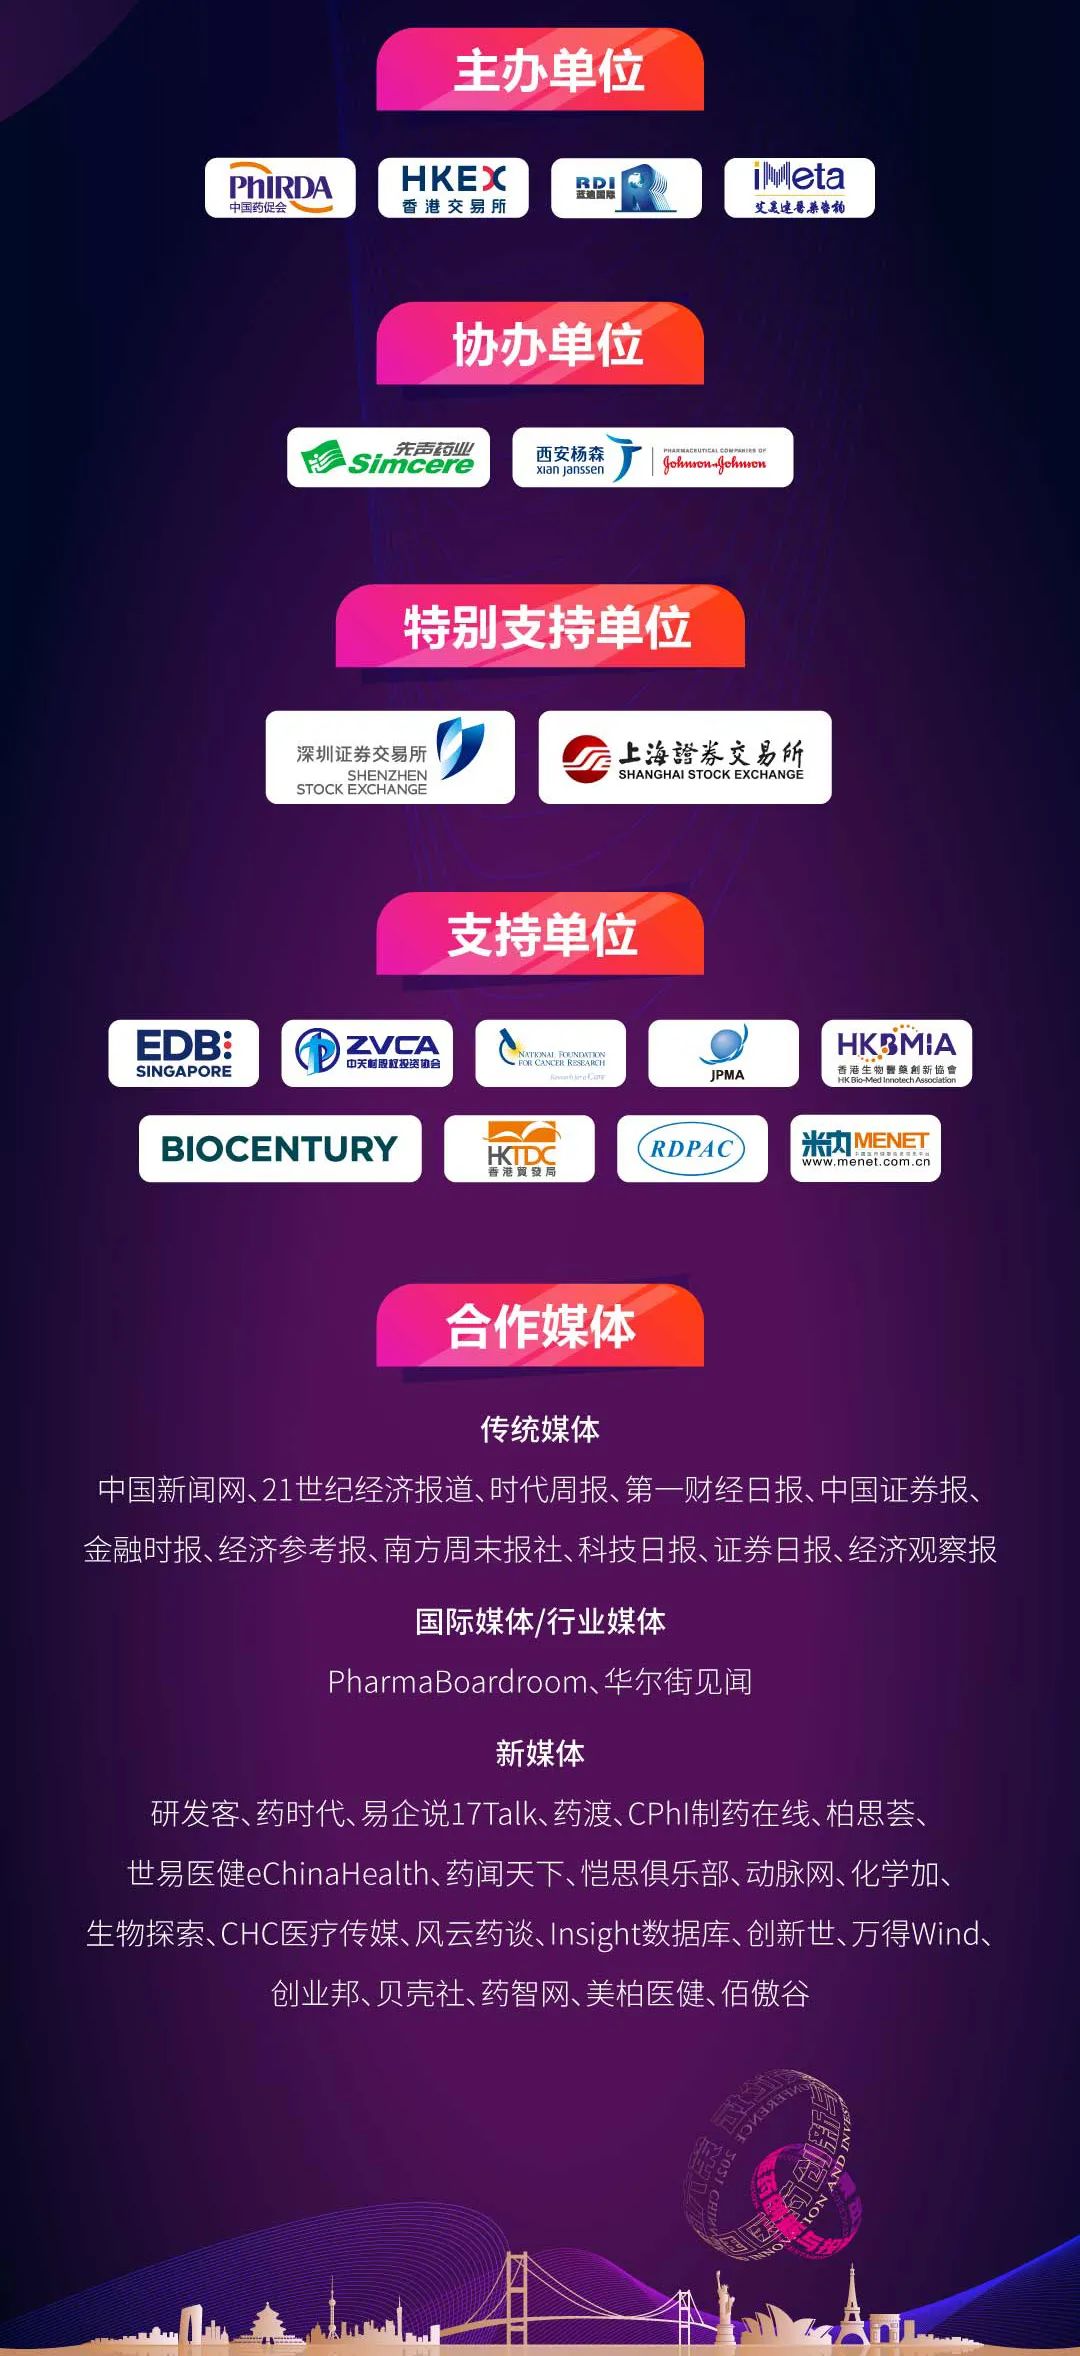 群贤毕至 盛宴再临 | 第六届中国医药创新与投资大会最新路演项目和精彩报告发布